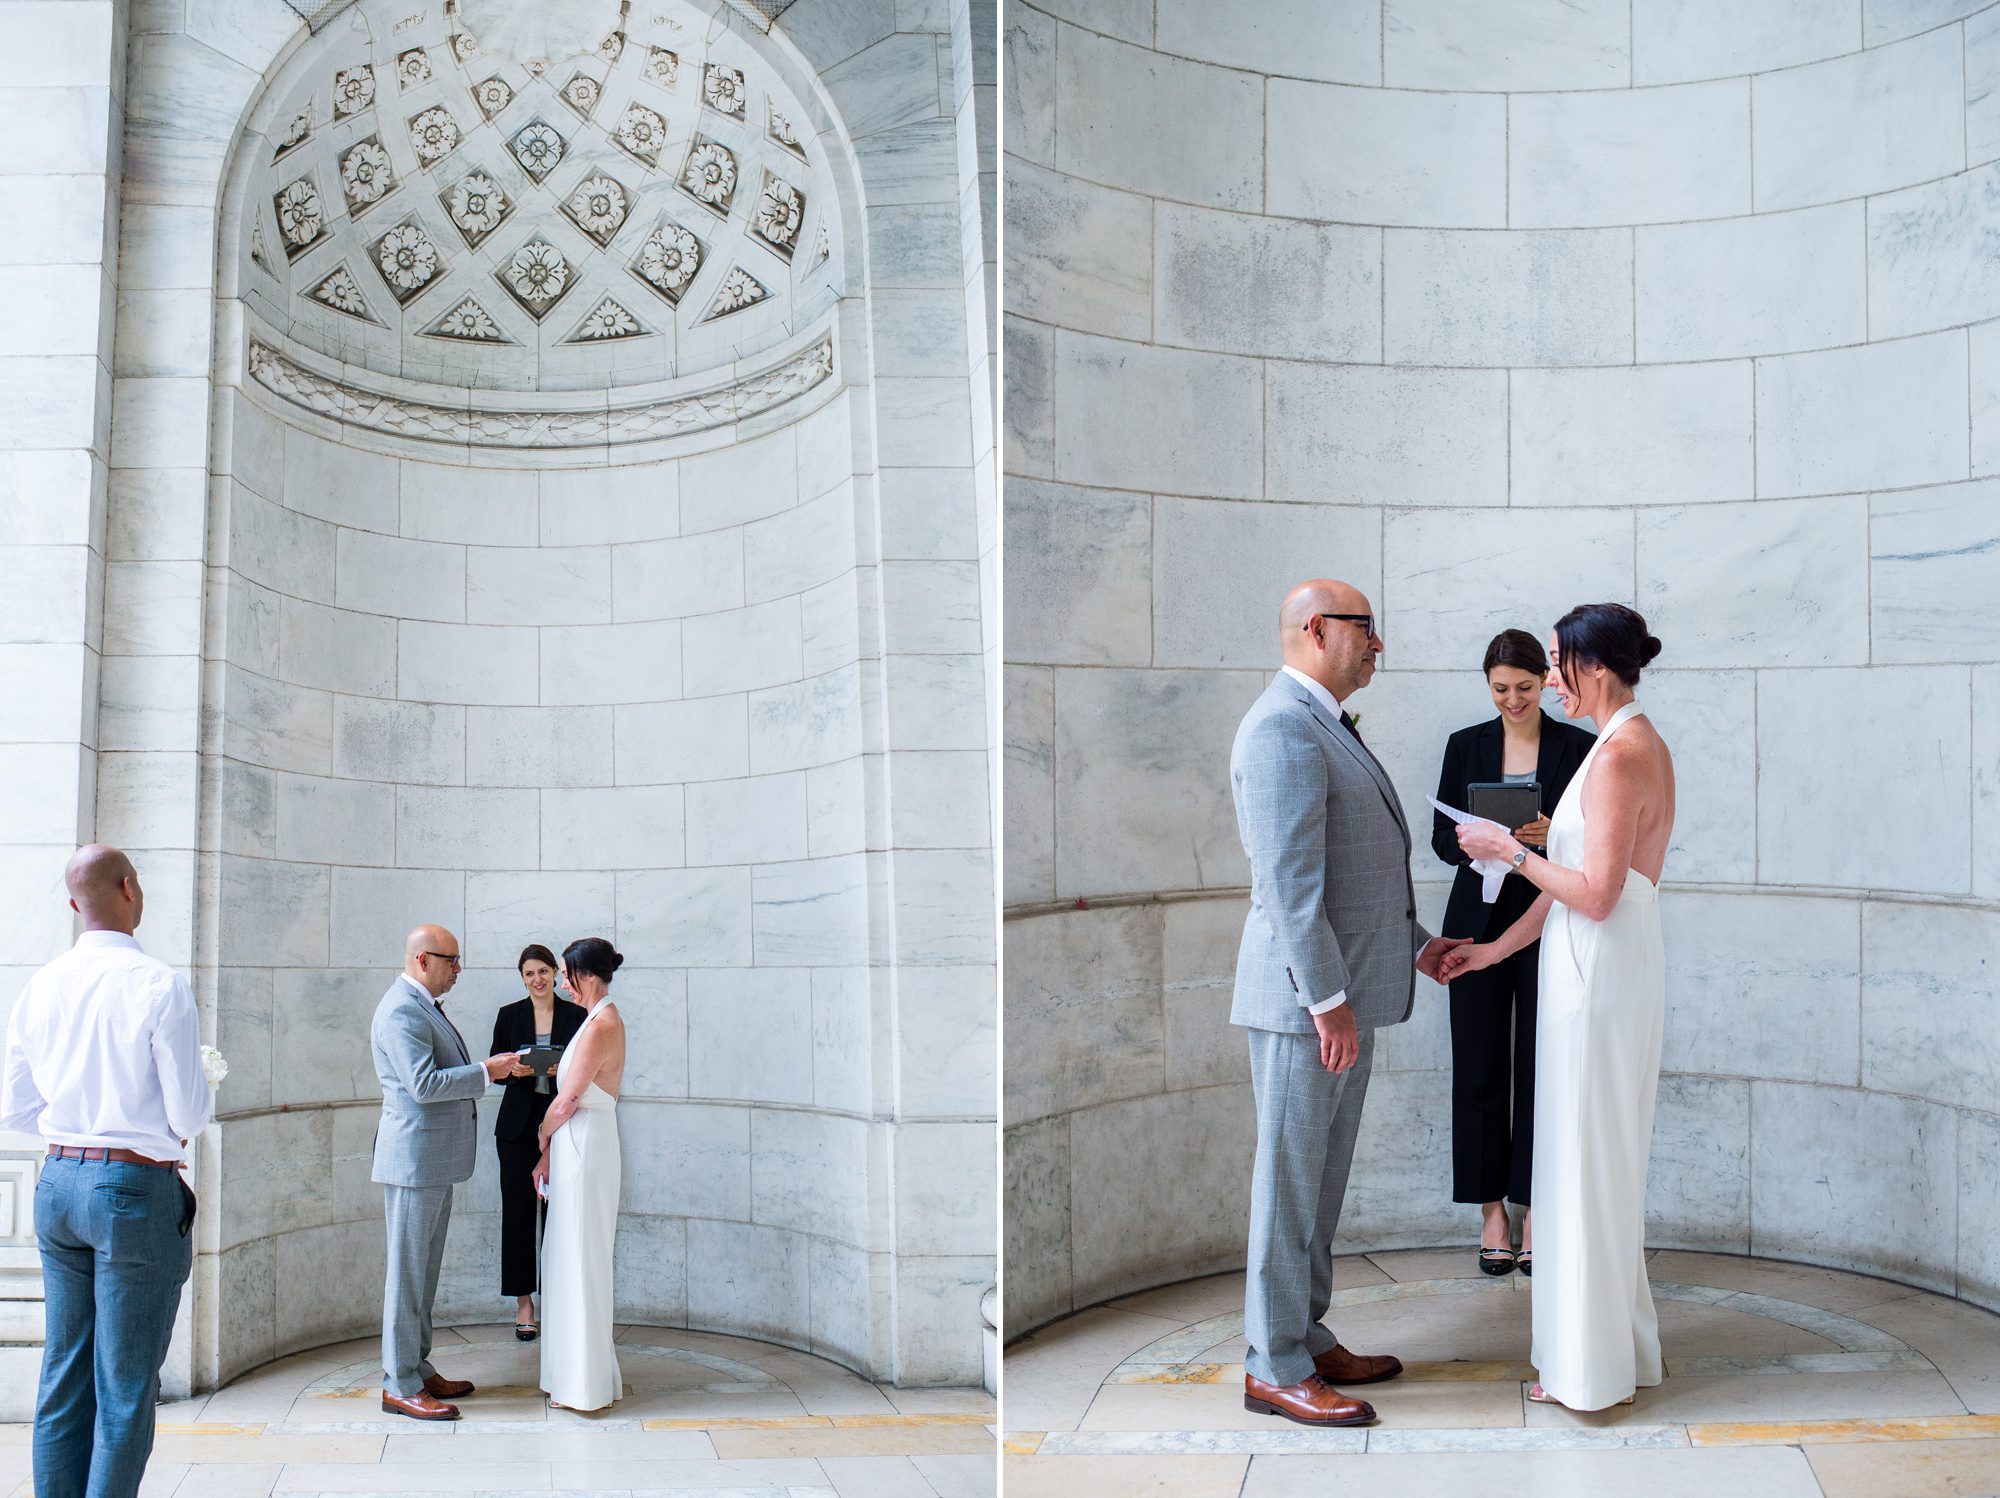 Wedding Ceremony at NY Public Library